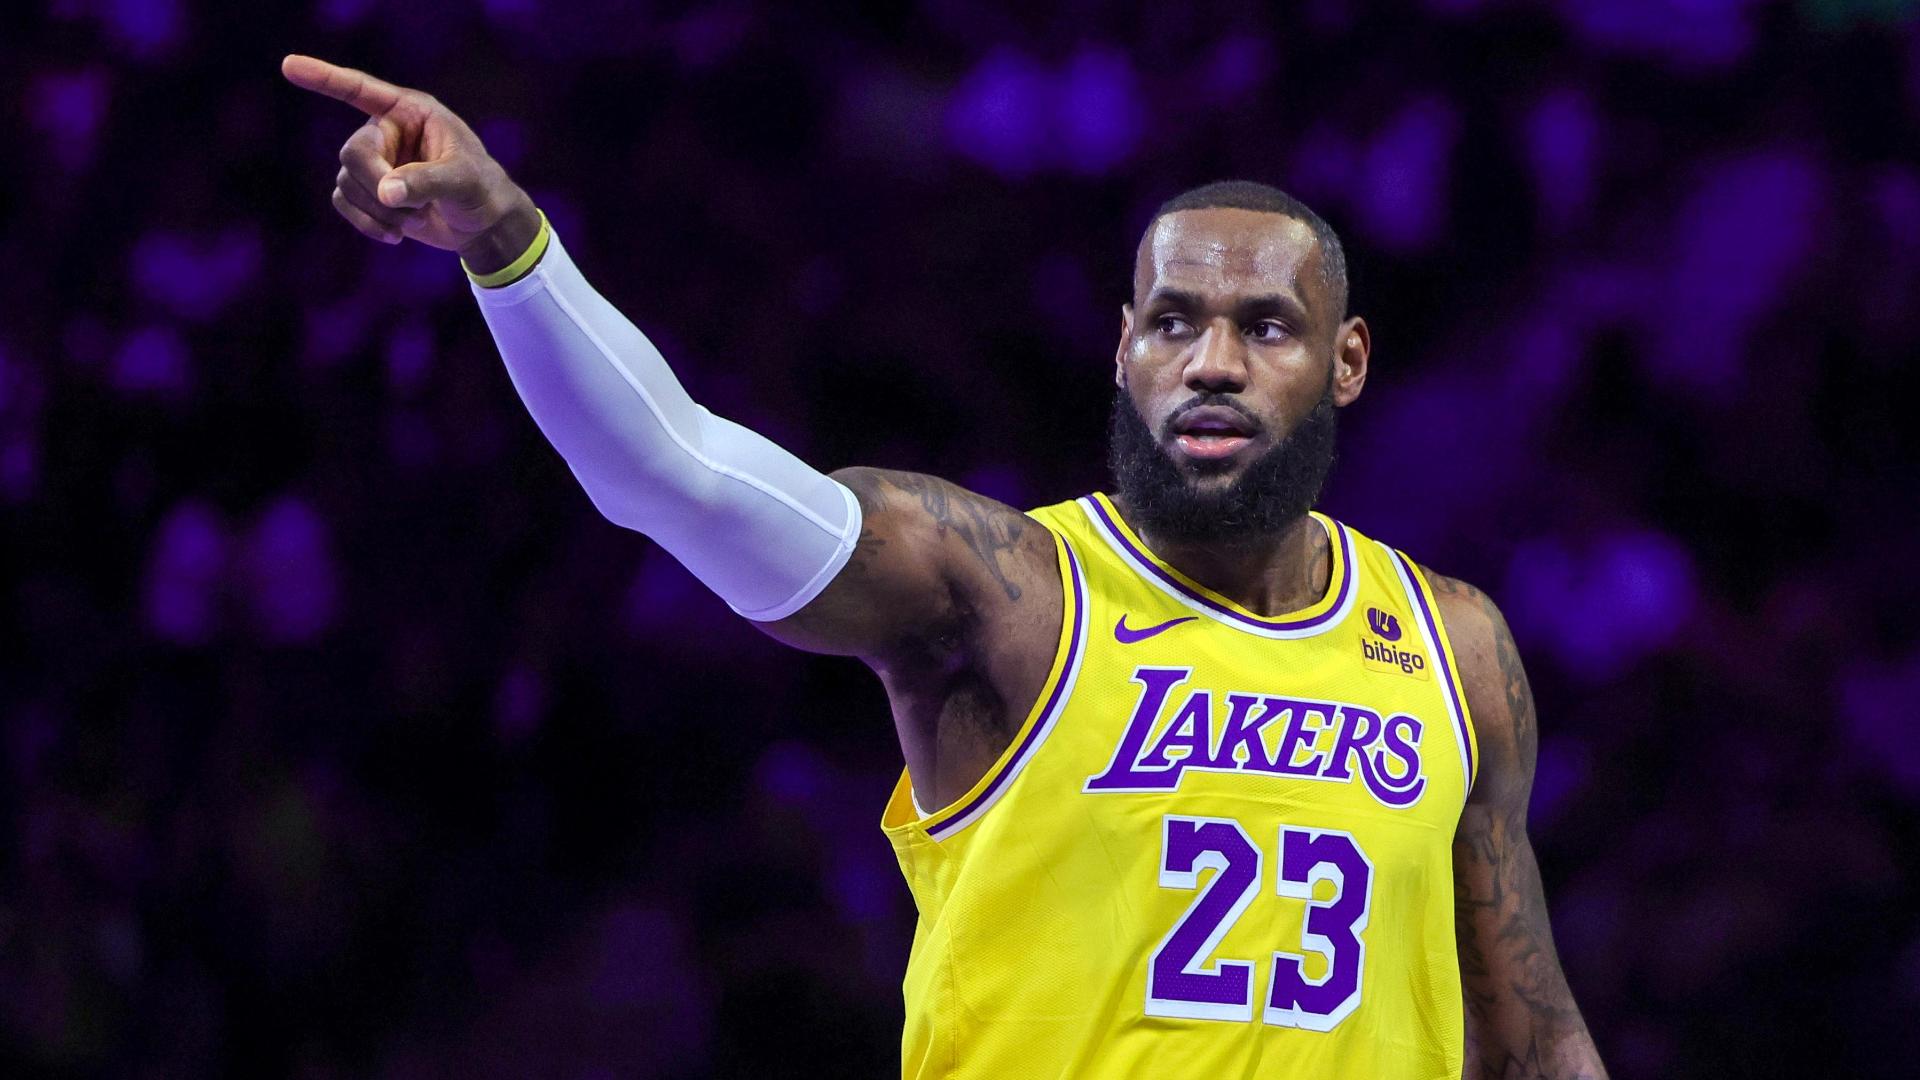 Los Angeles Lakers Resultados, vídeos e estatísticas - ESPN (BR)